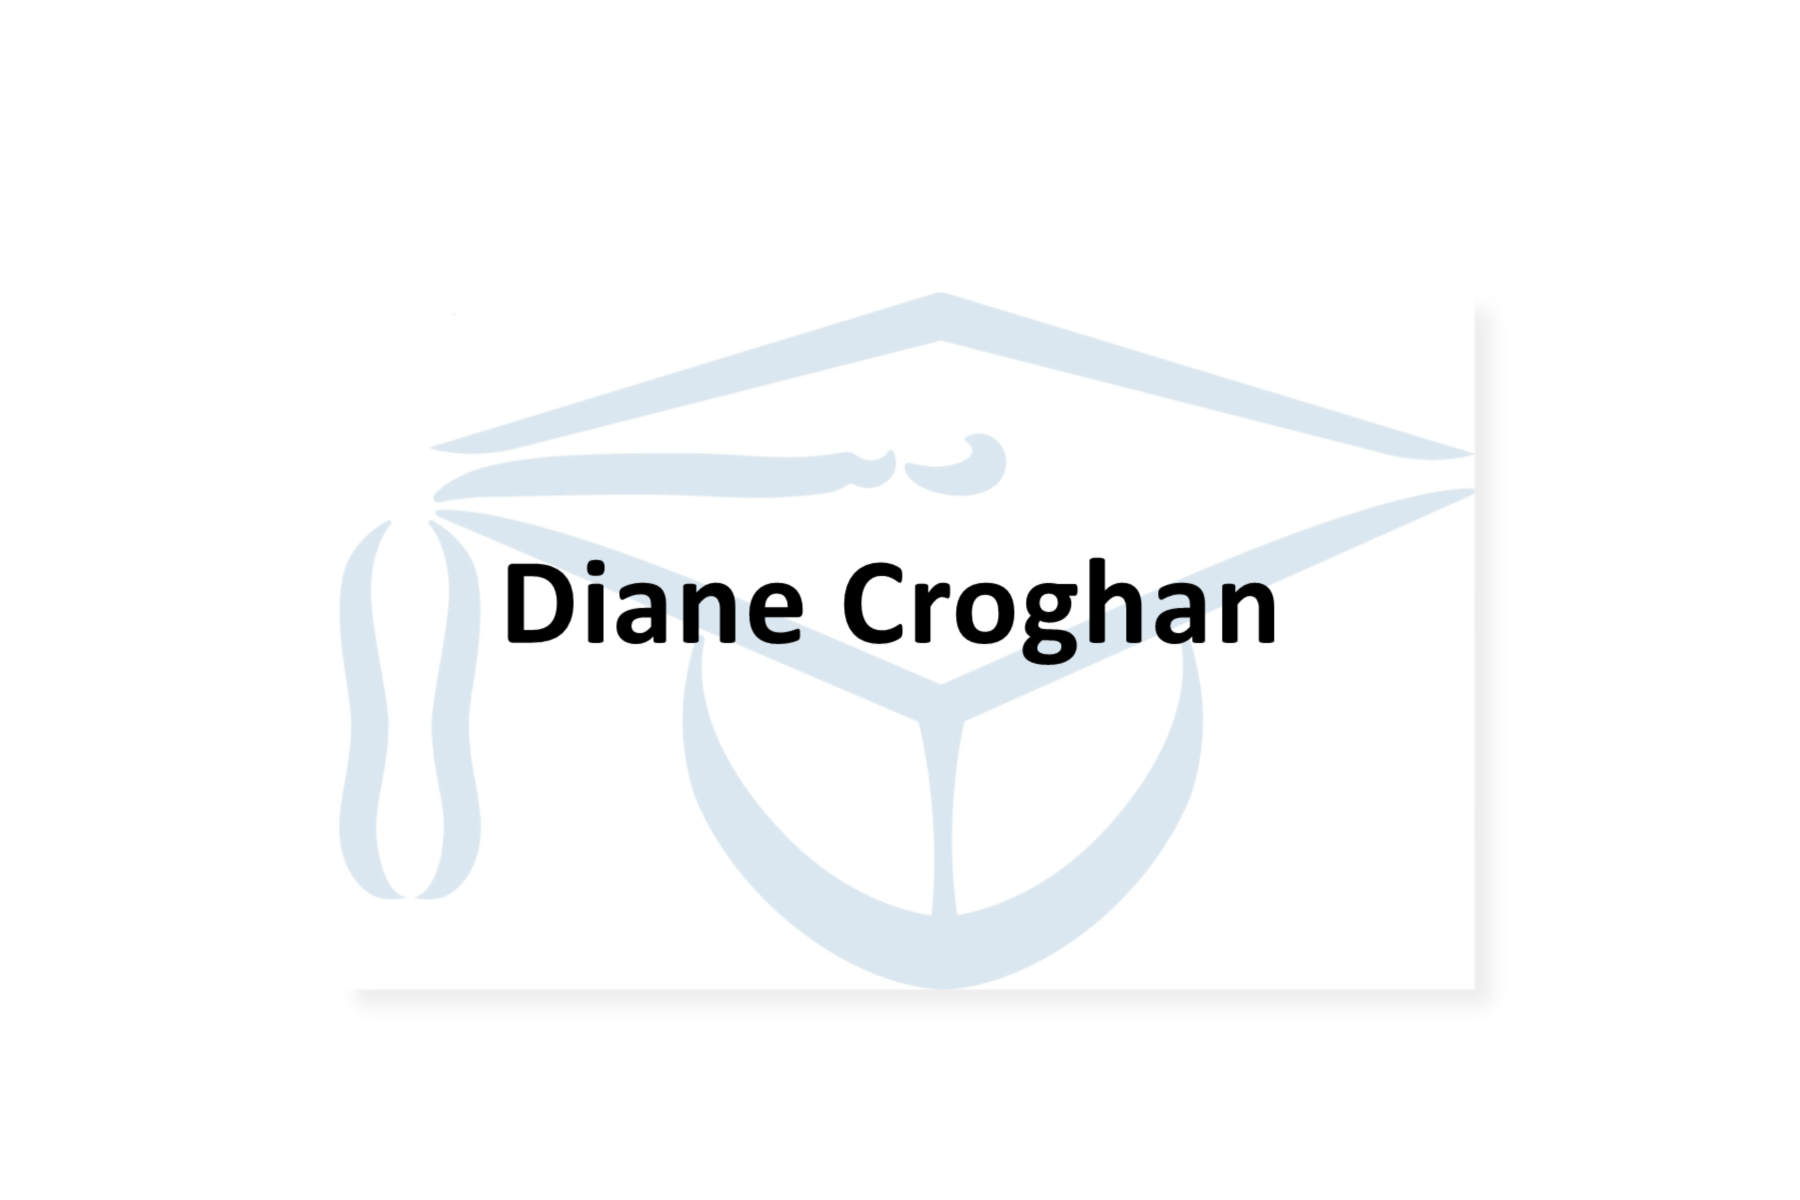 Diane Croghan